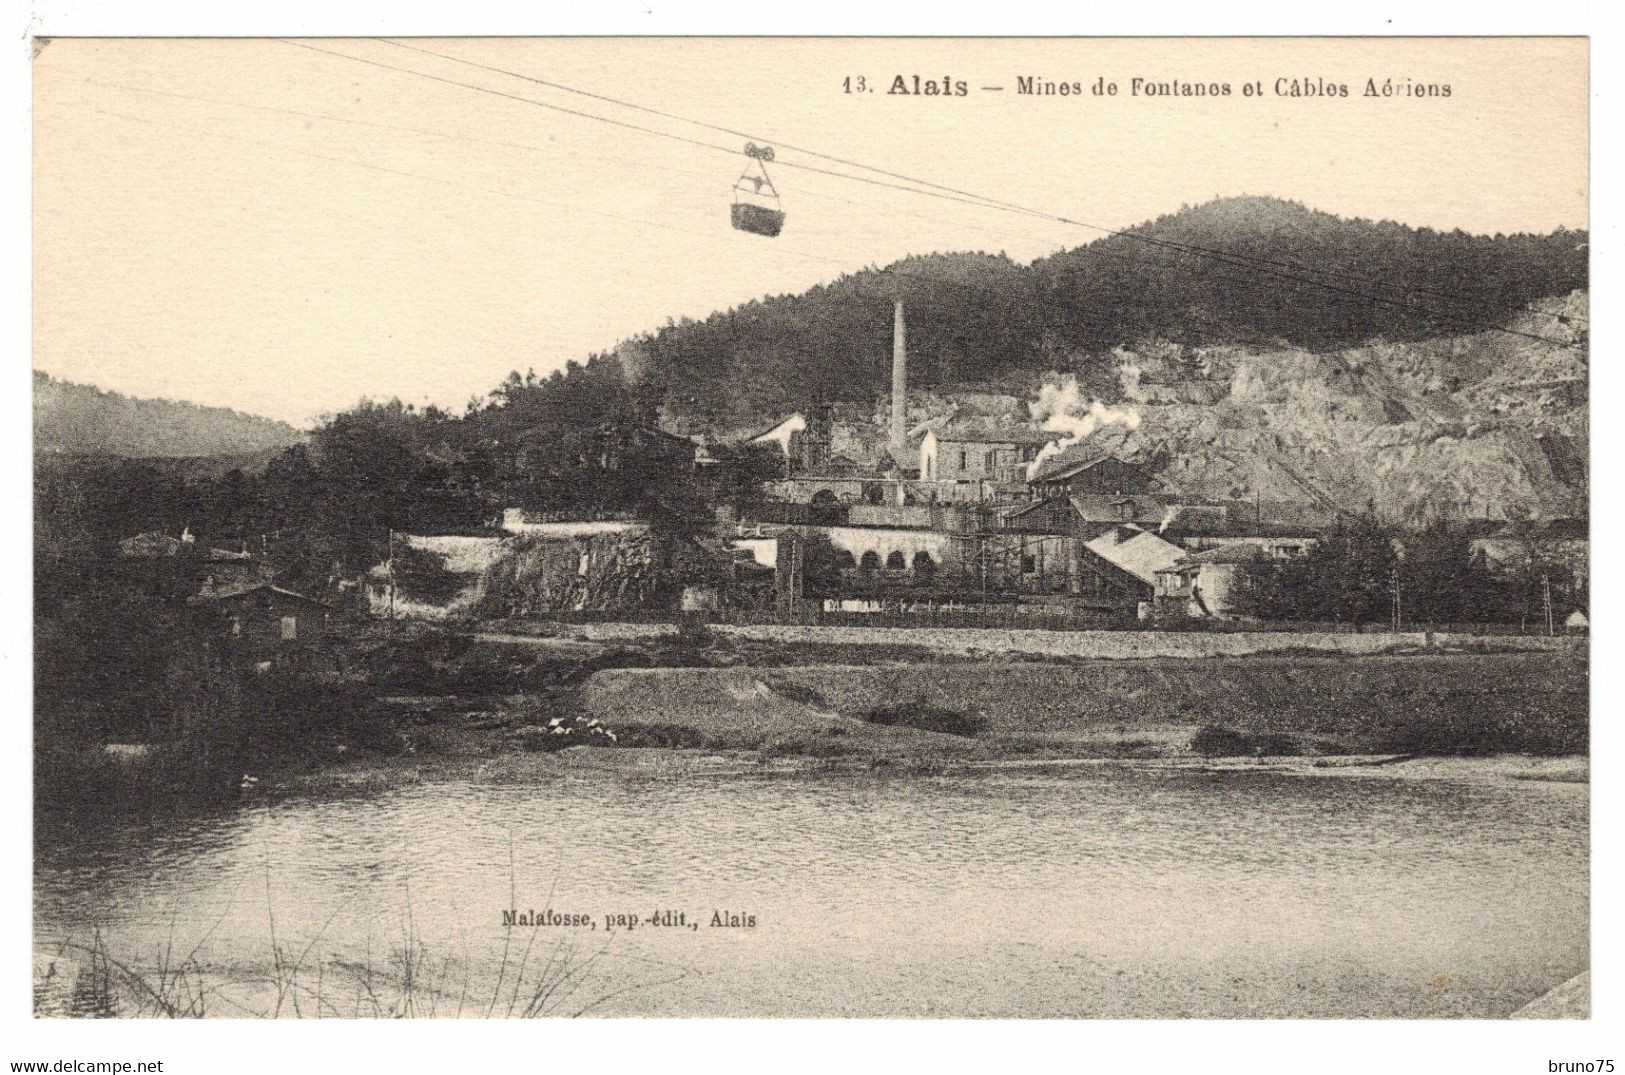 30 - ALAIS (Alès) - Mines De Fontanes Et Câbles Aériens - Malafosse 13 - Alès